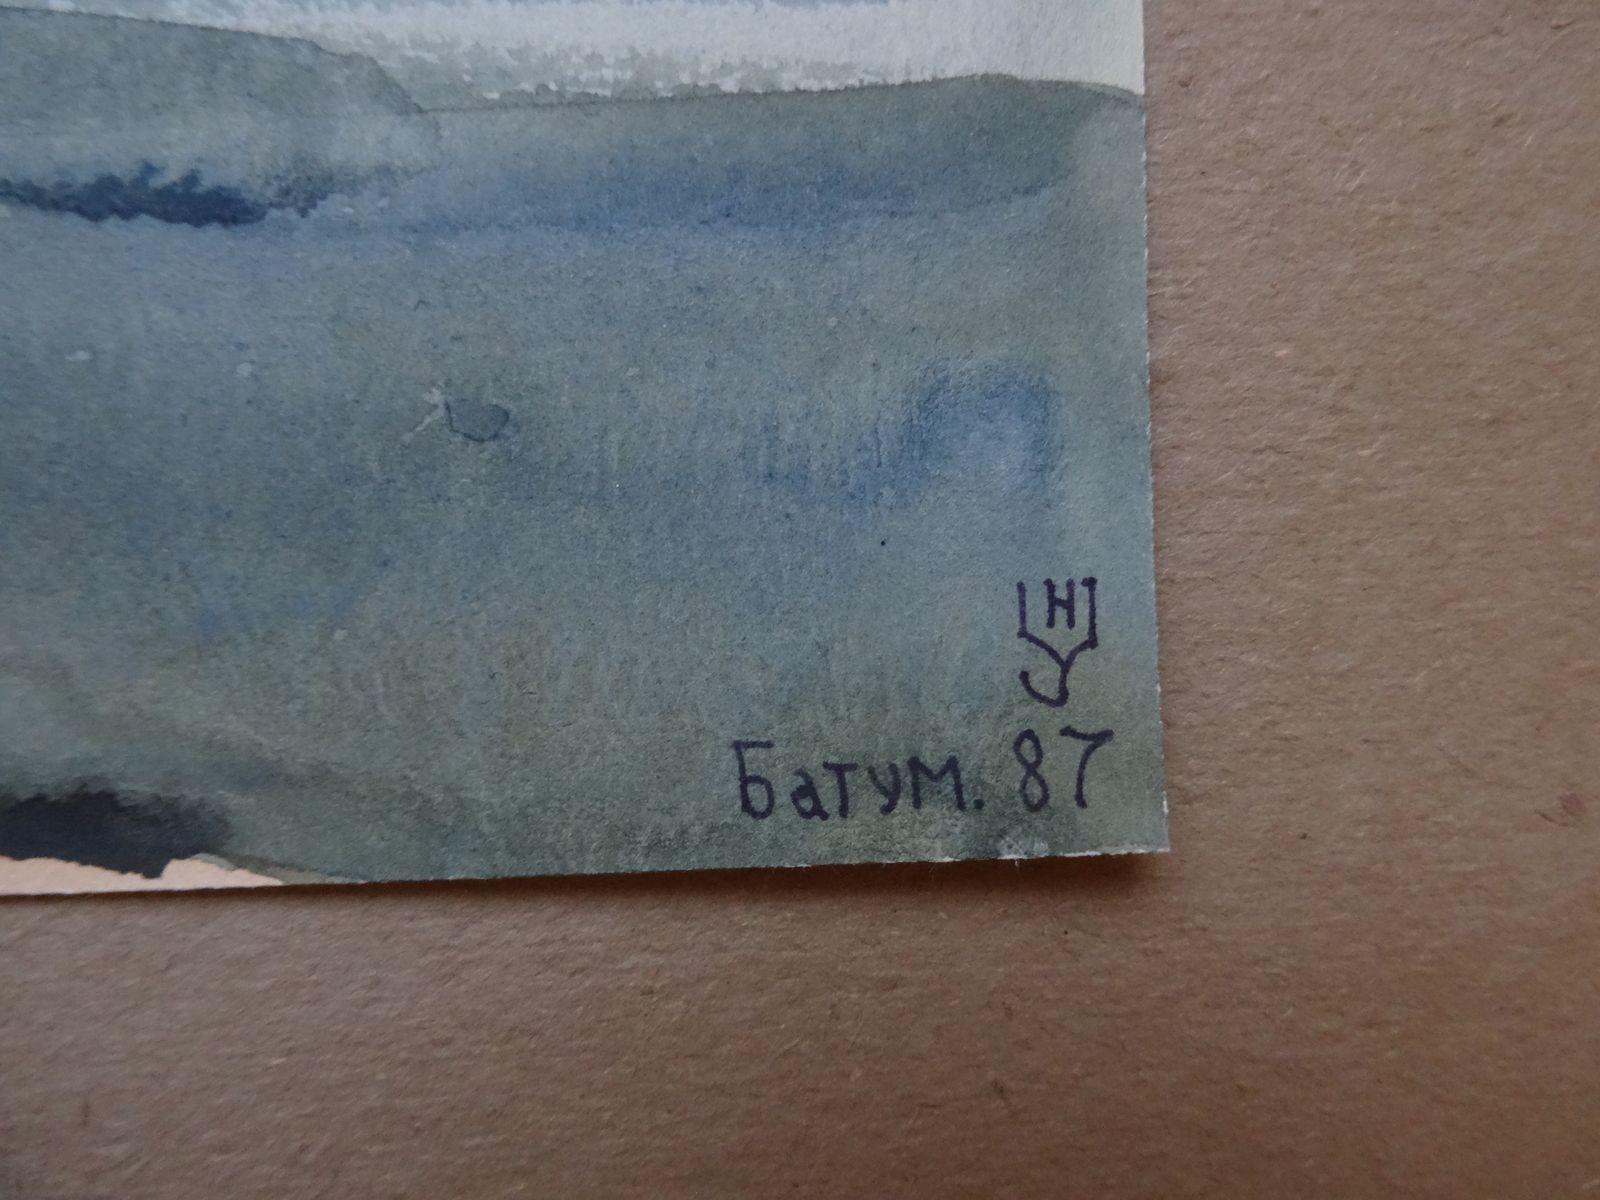 Batumi. 1987, paper, watercolor, 18.5x30 cm - Painting by Nikolai Uvarov 